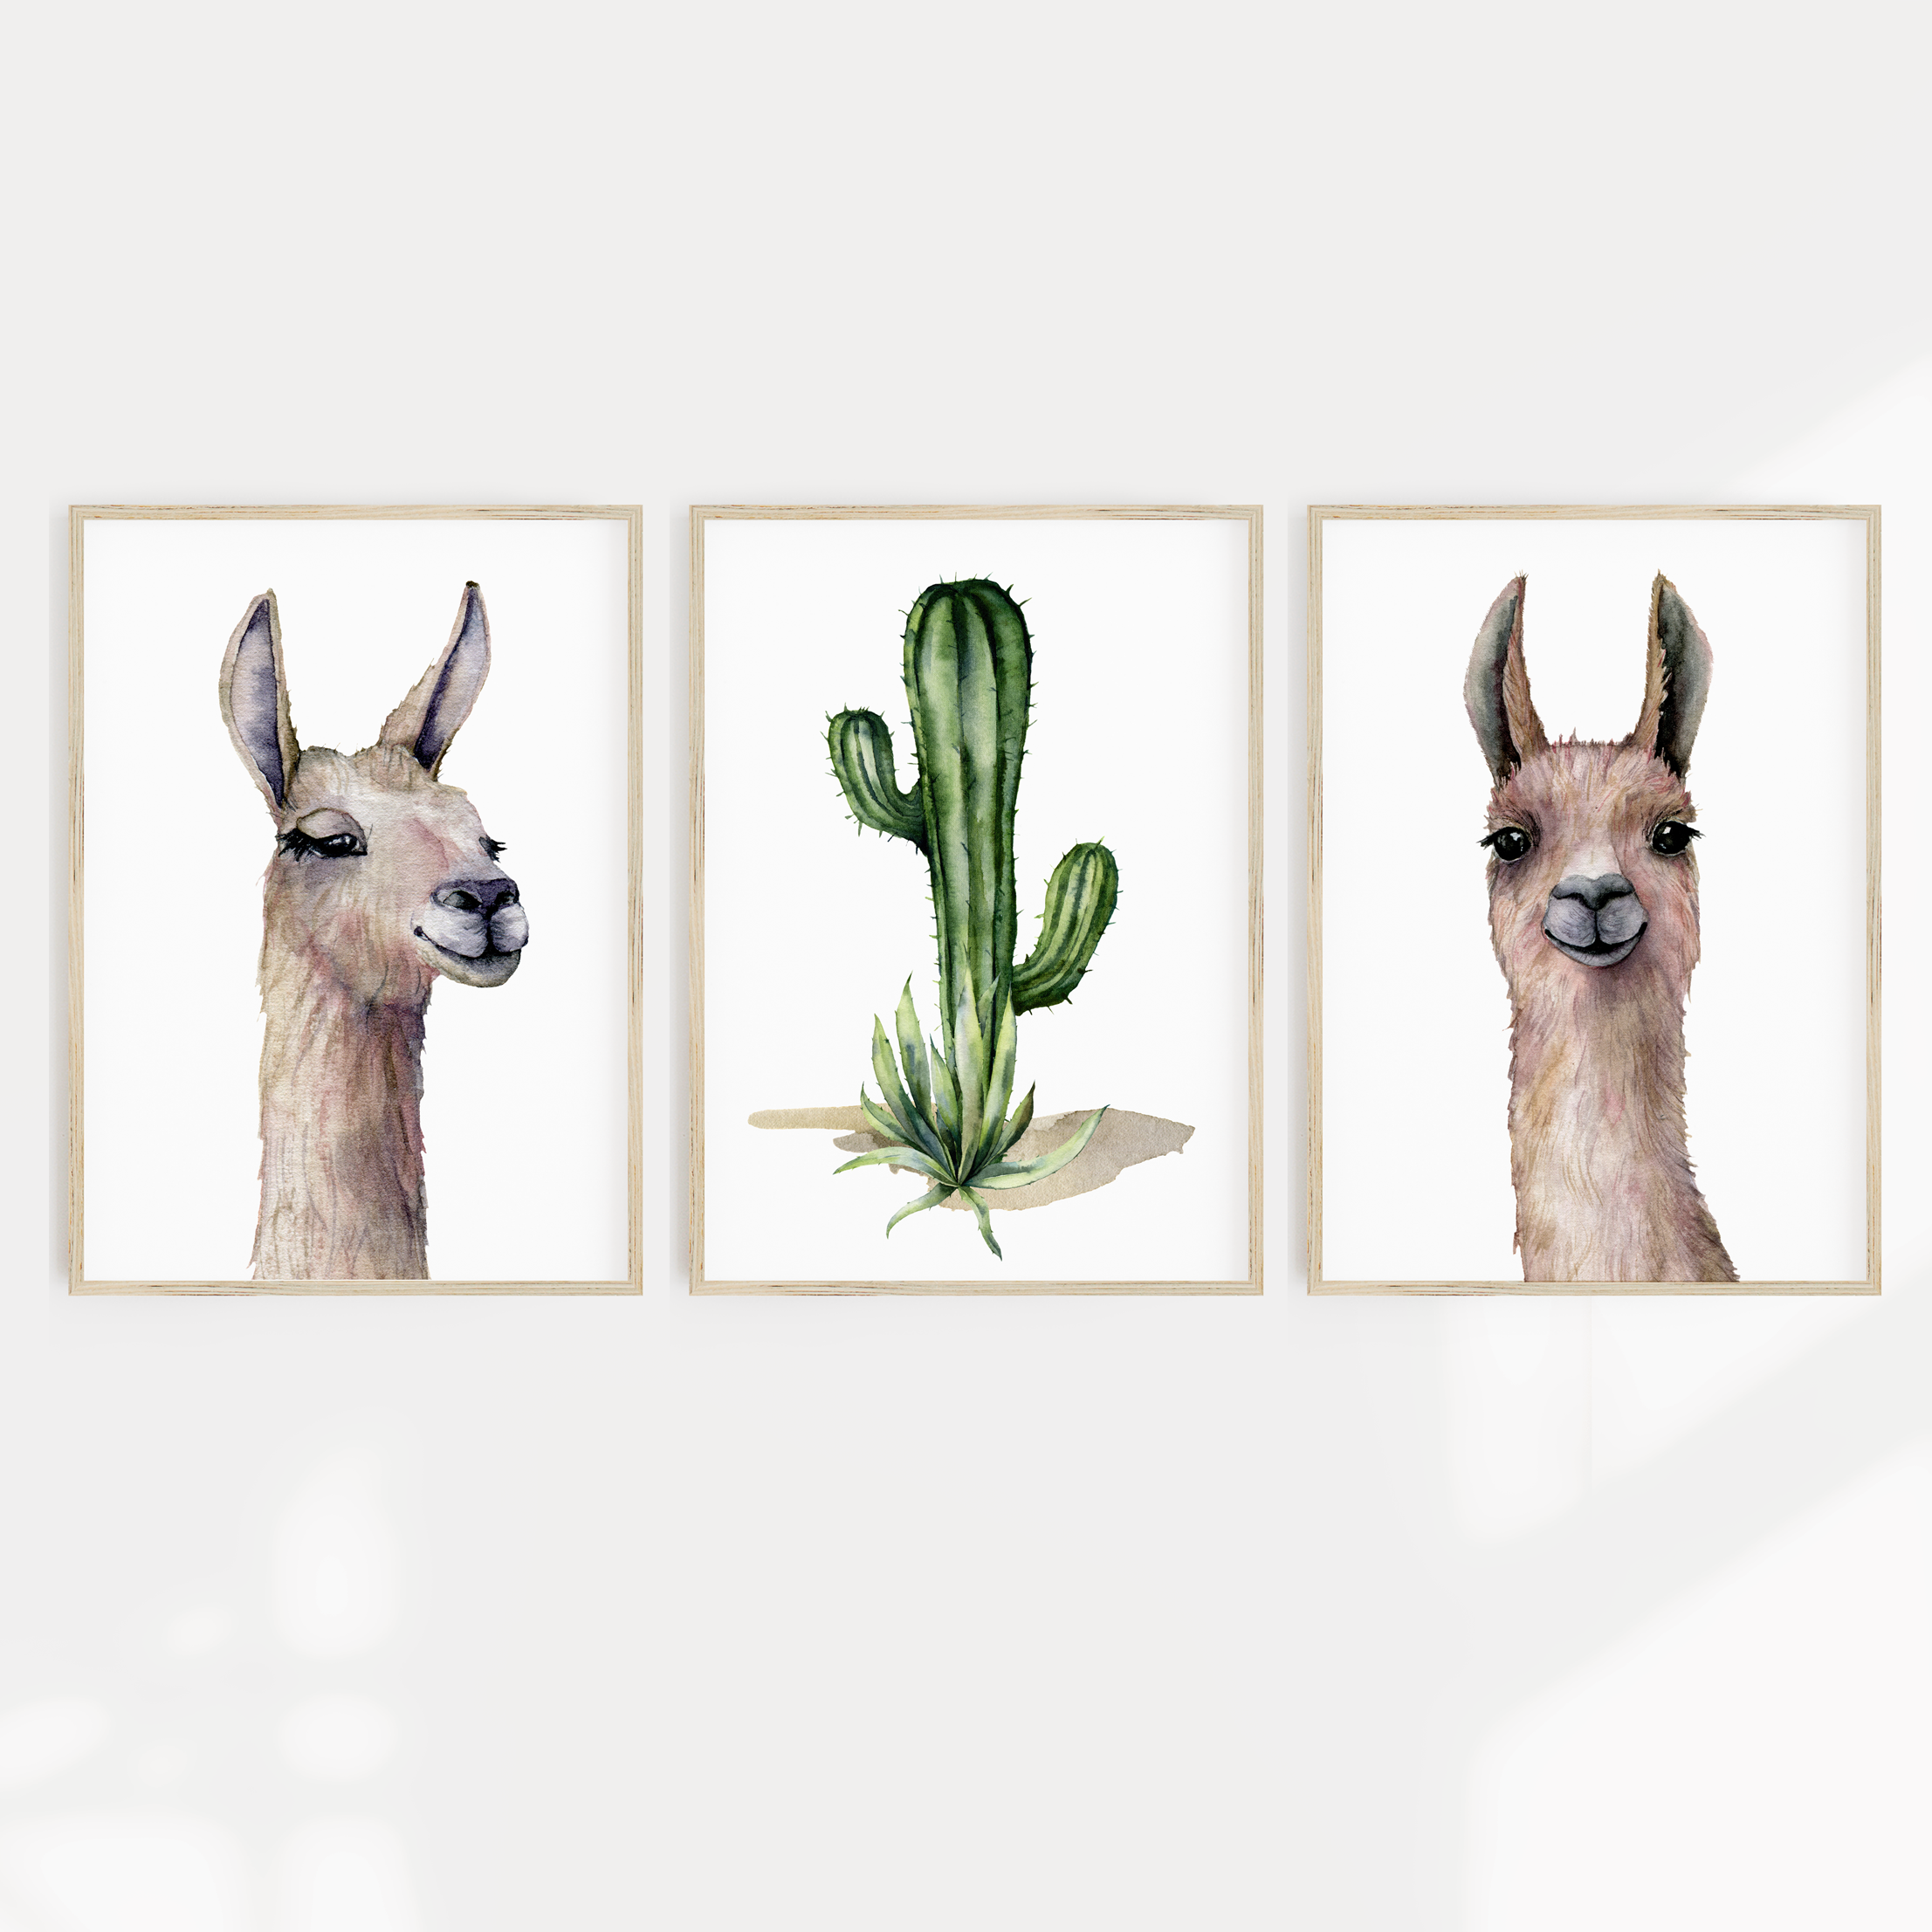 Watercolour Llama Alpaca & Cactus Prints